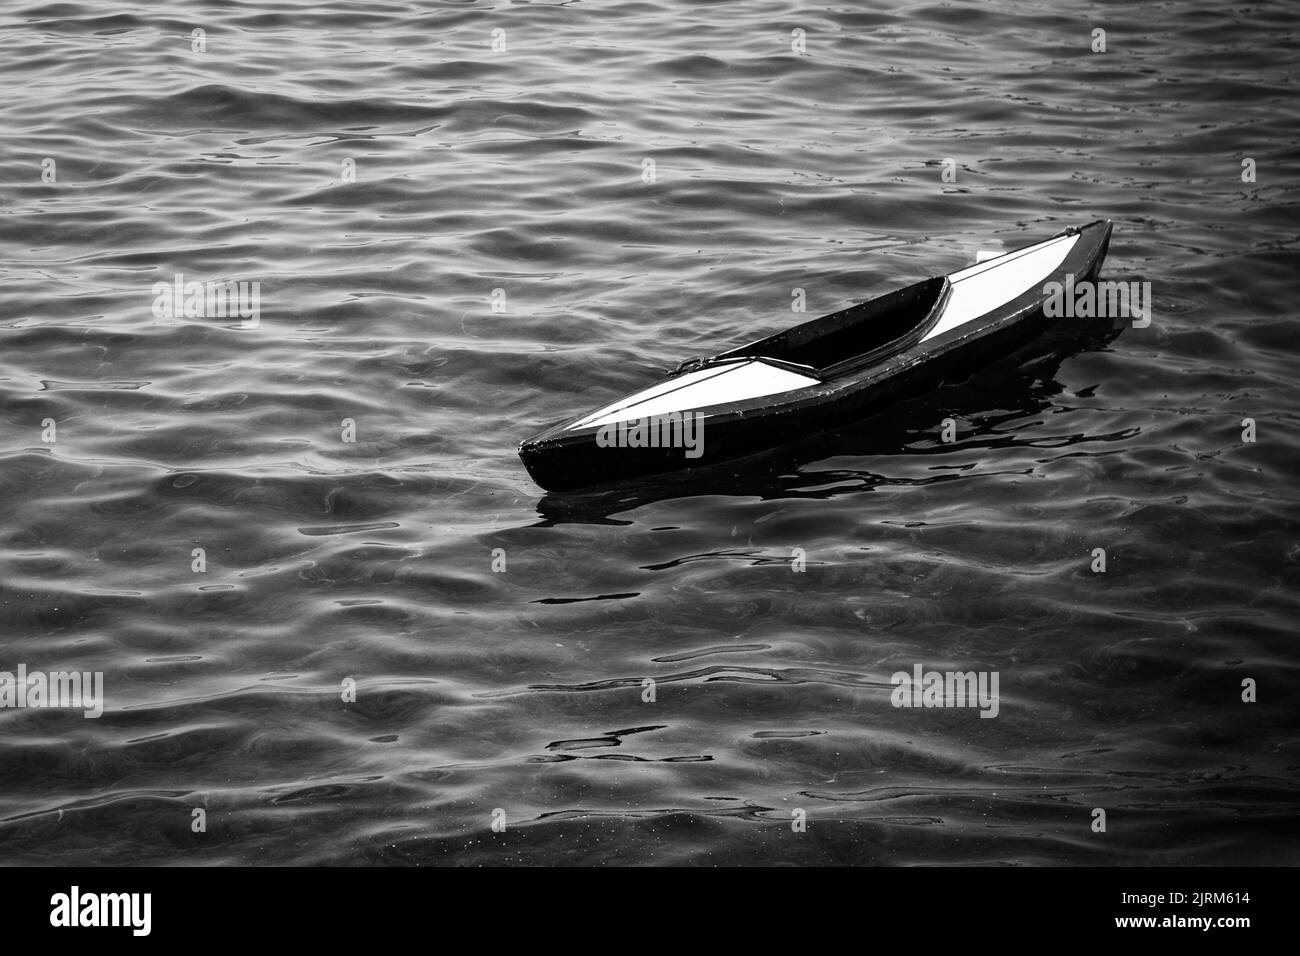 Une photo en niveaux de gris d'un kayak sur l'eau Banque D'Images